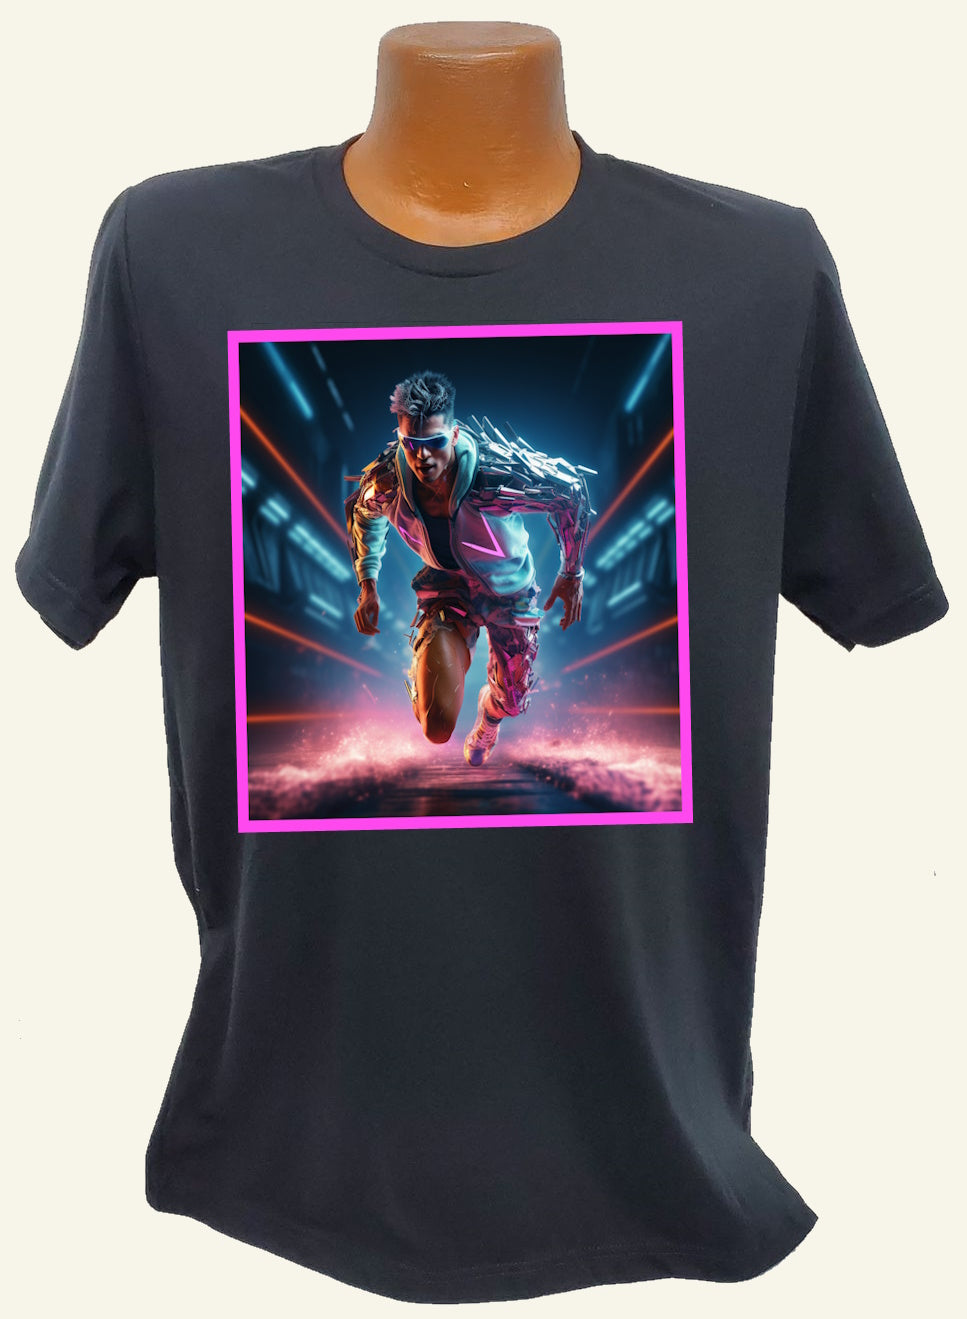 $45 - 'The Starter' Relaunch T-Shirt Bundle